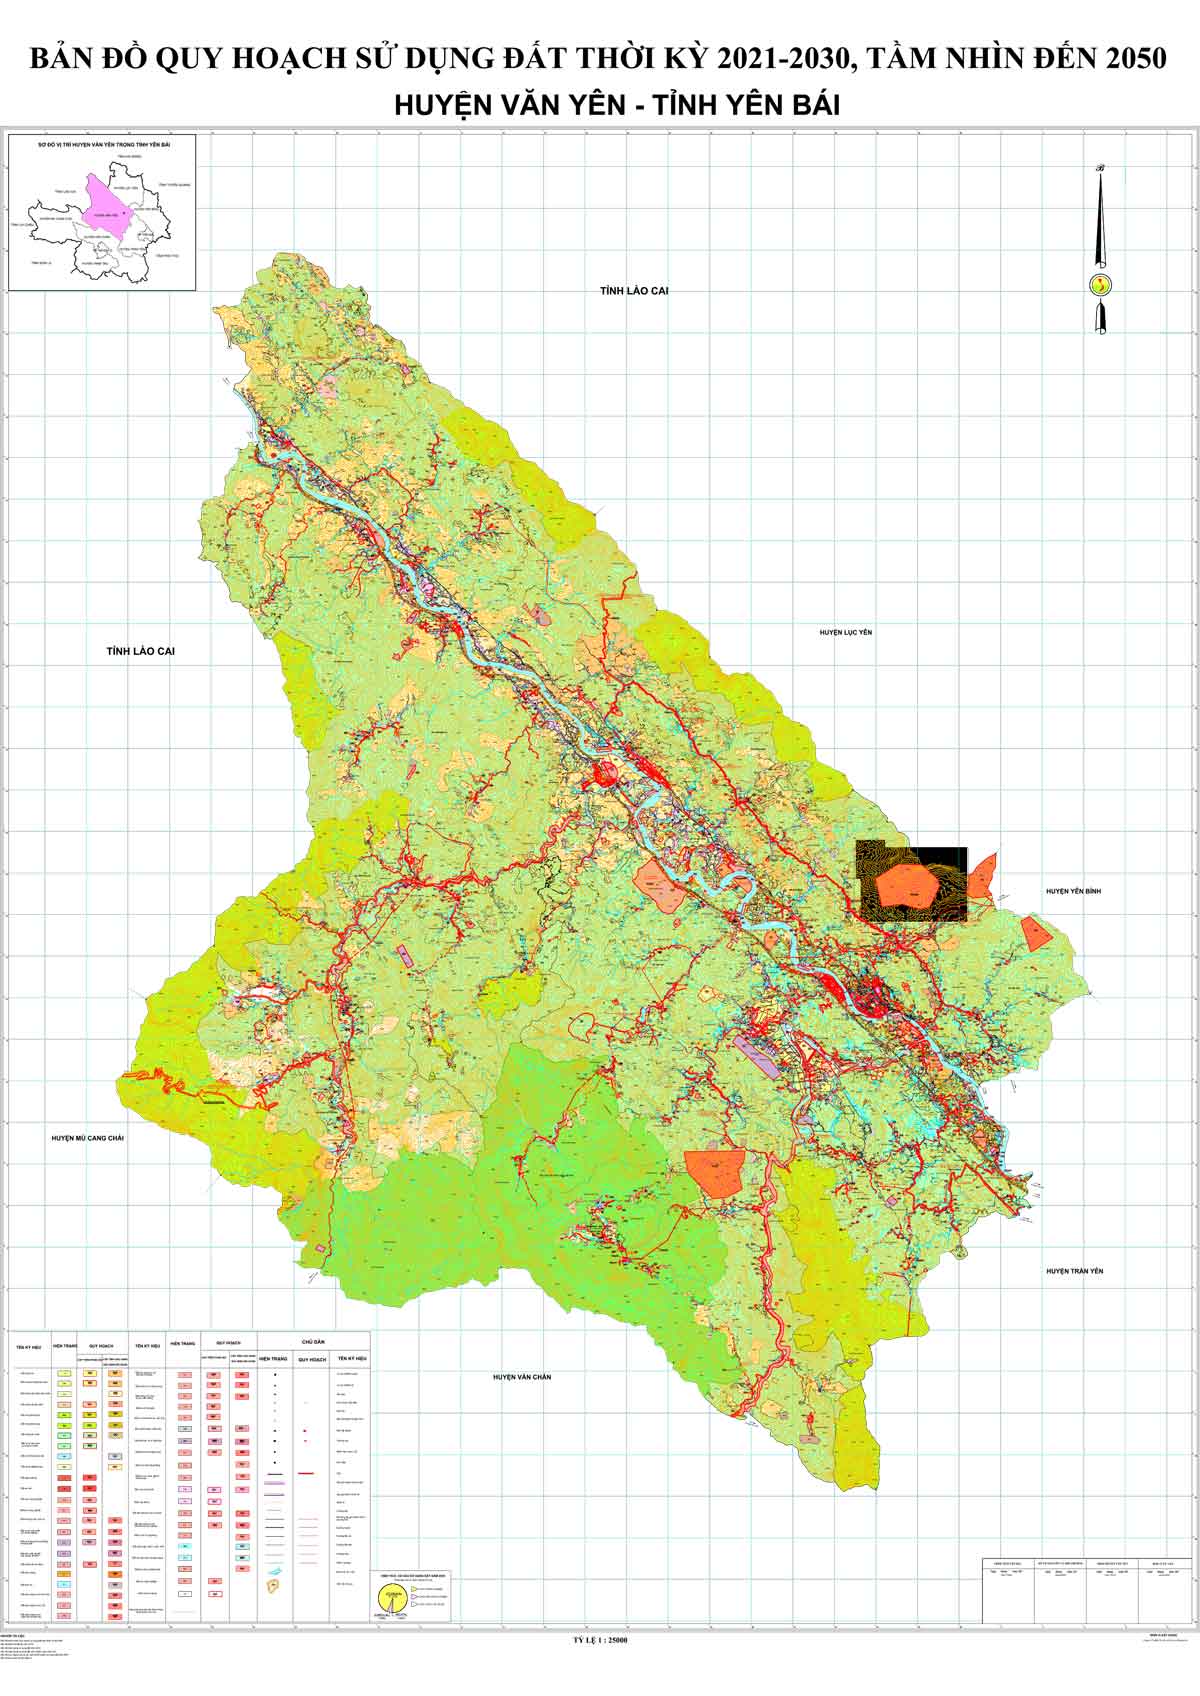 Bản đồ QHSDĐ huyện Văn Yên đến năm 2030